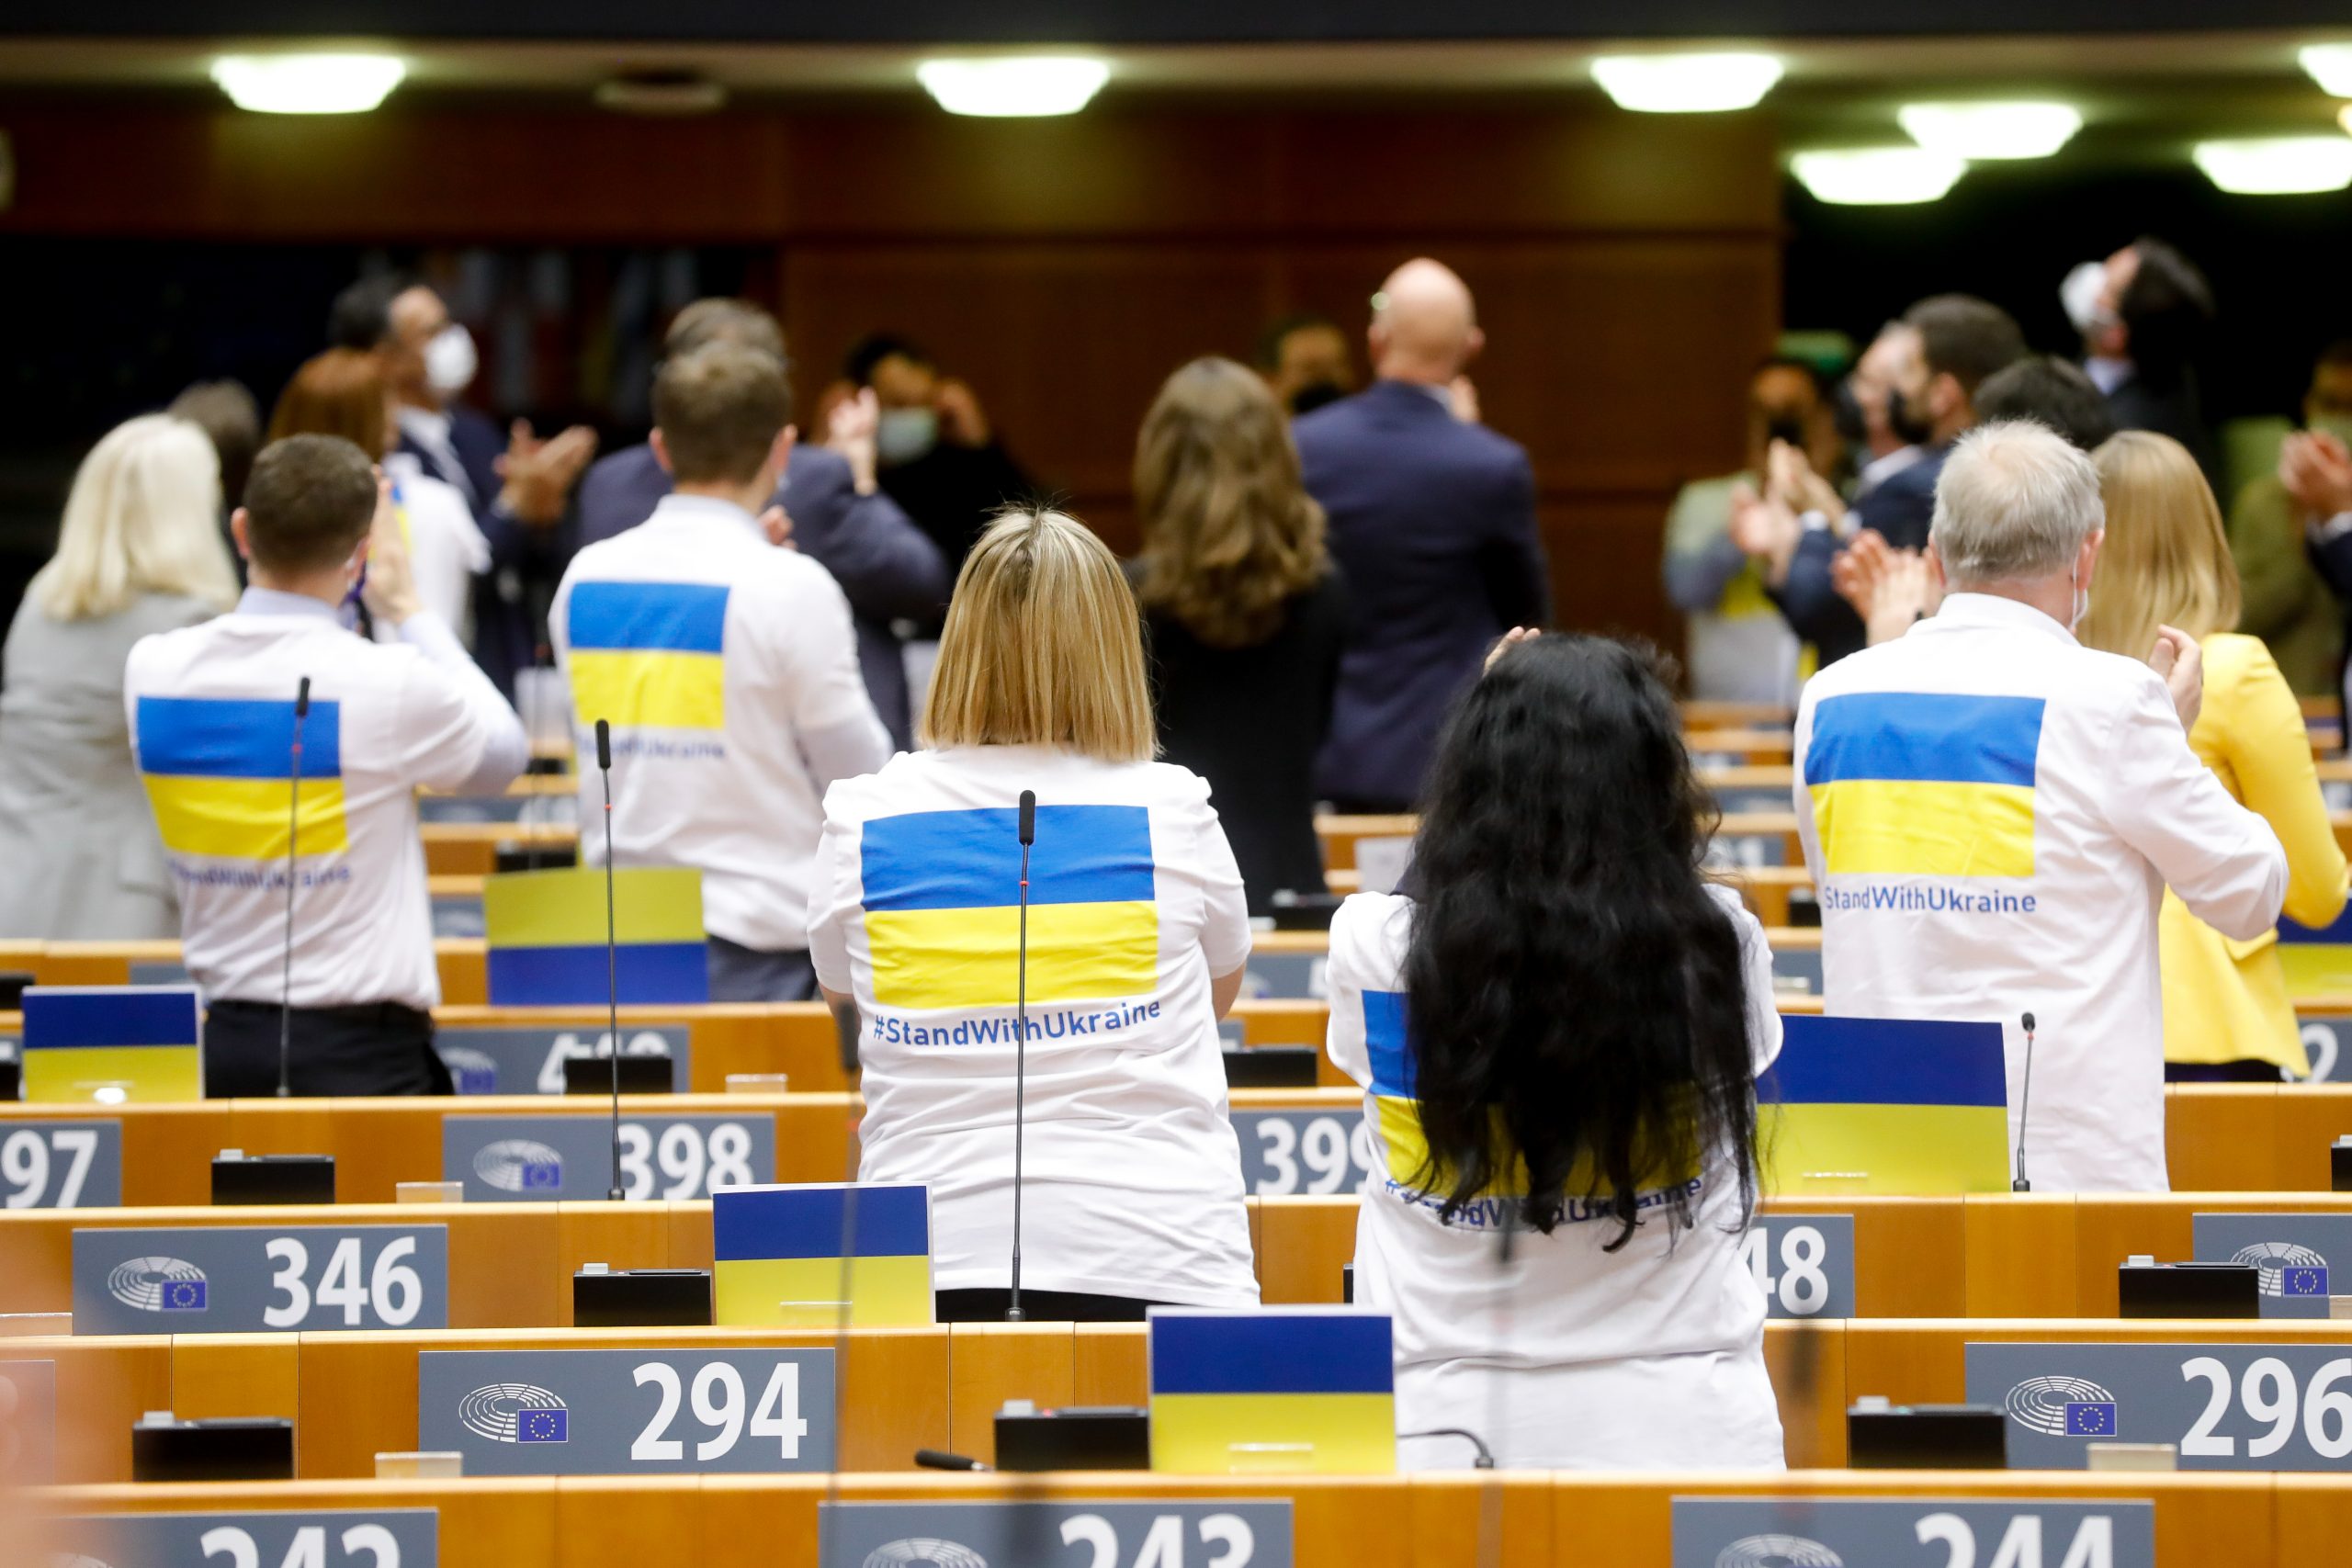 Evropski parlament Ukrajina